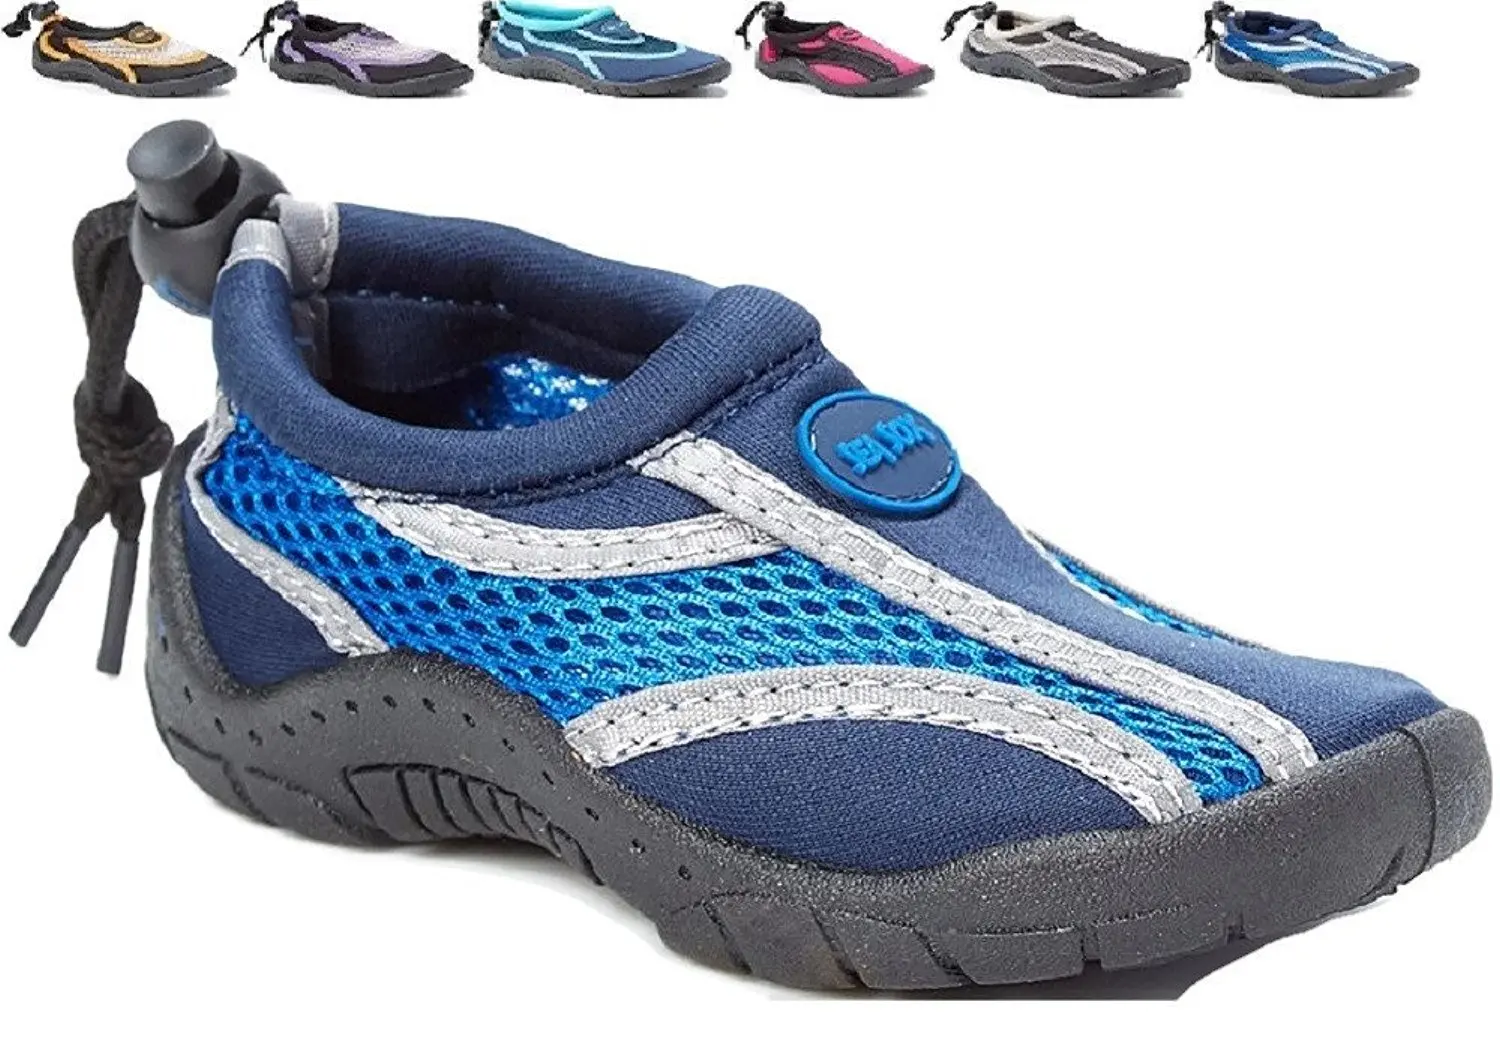 sea sox shoes